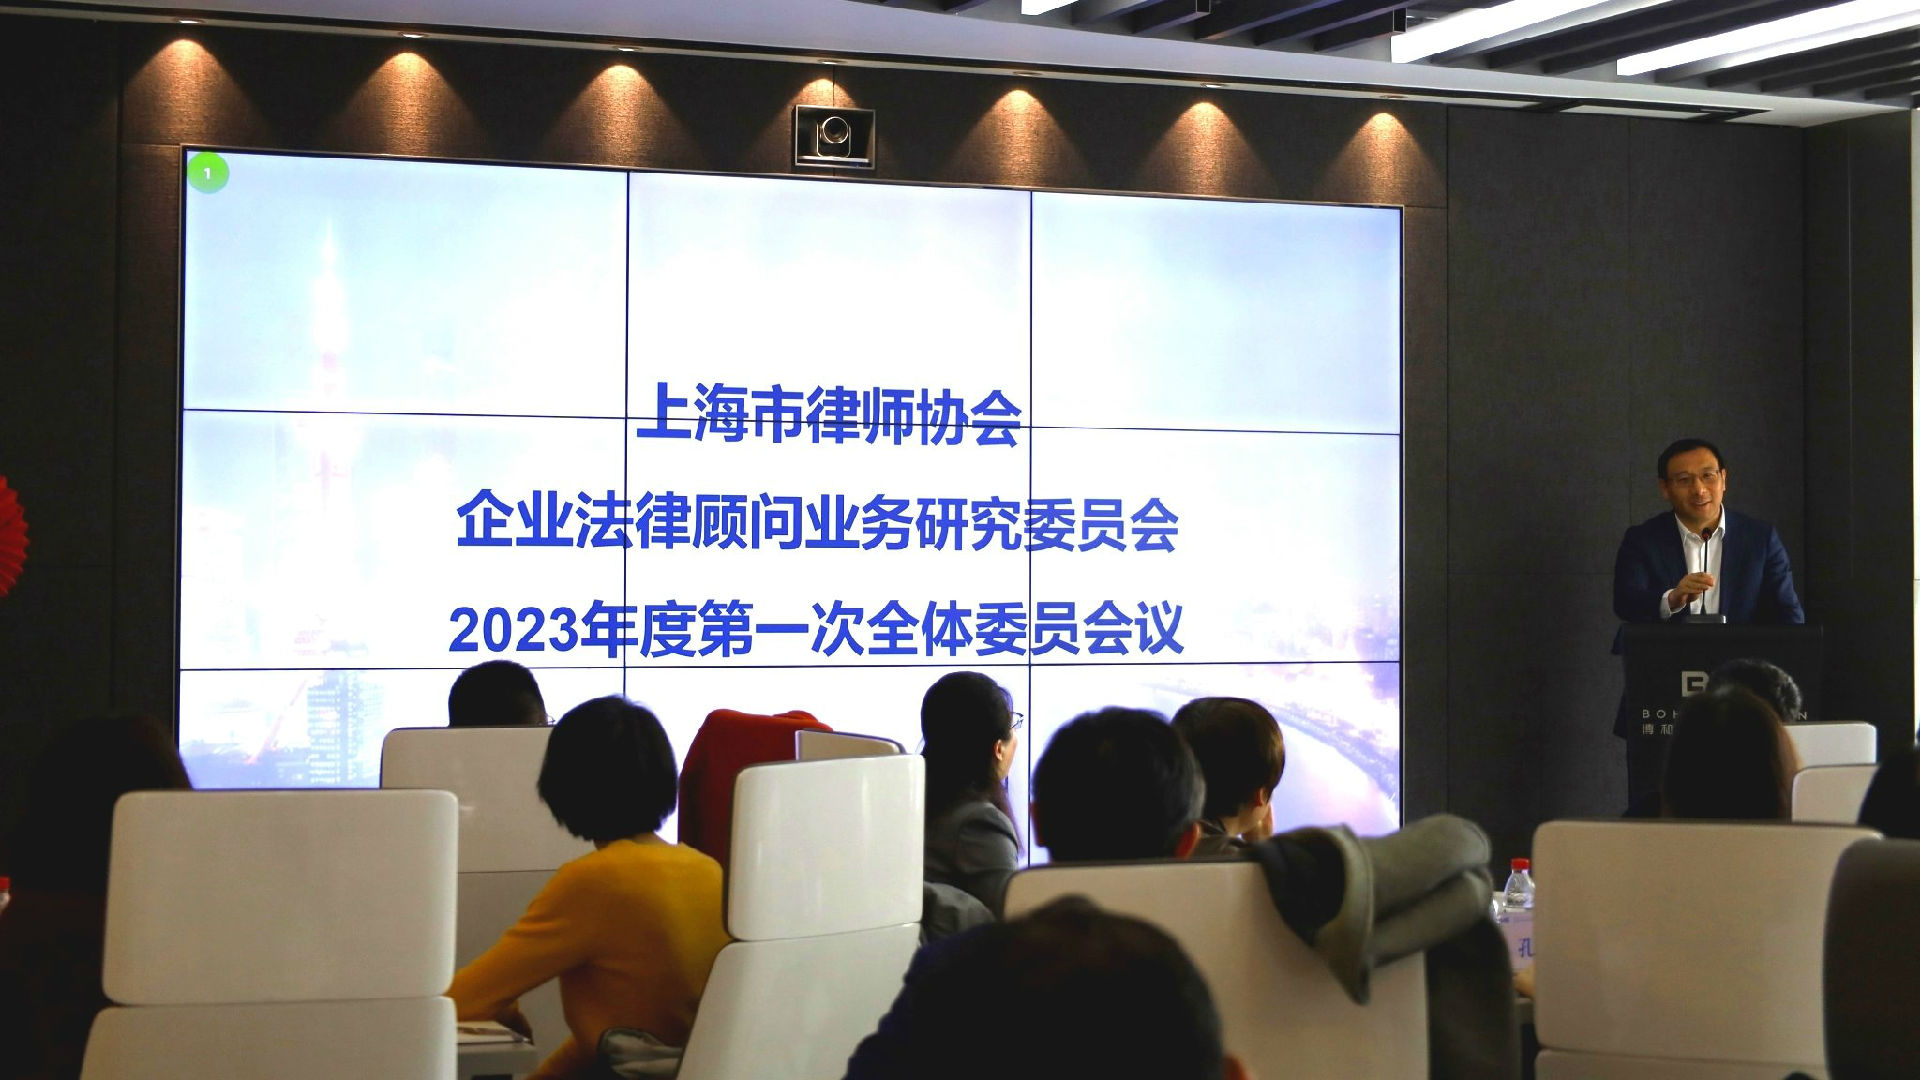 上海市律师协会企业法律顾问业务研究委员会 2023年度第一次全体委员会议在博和汉商所召开